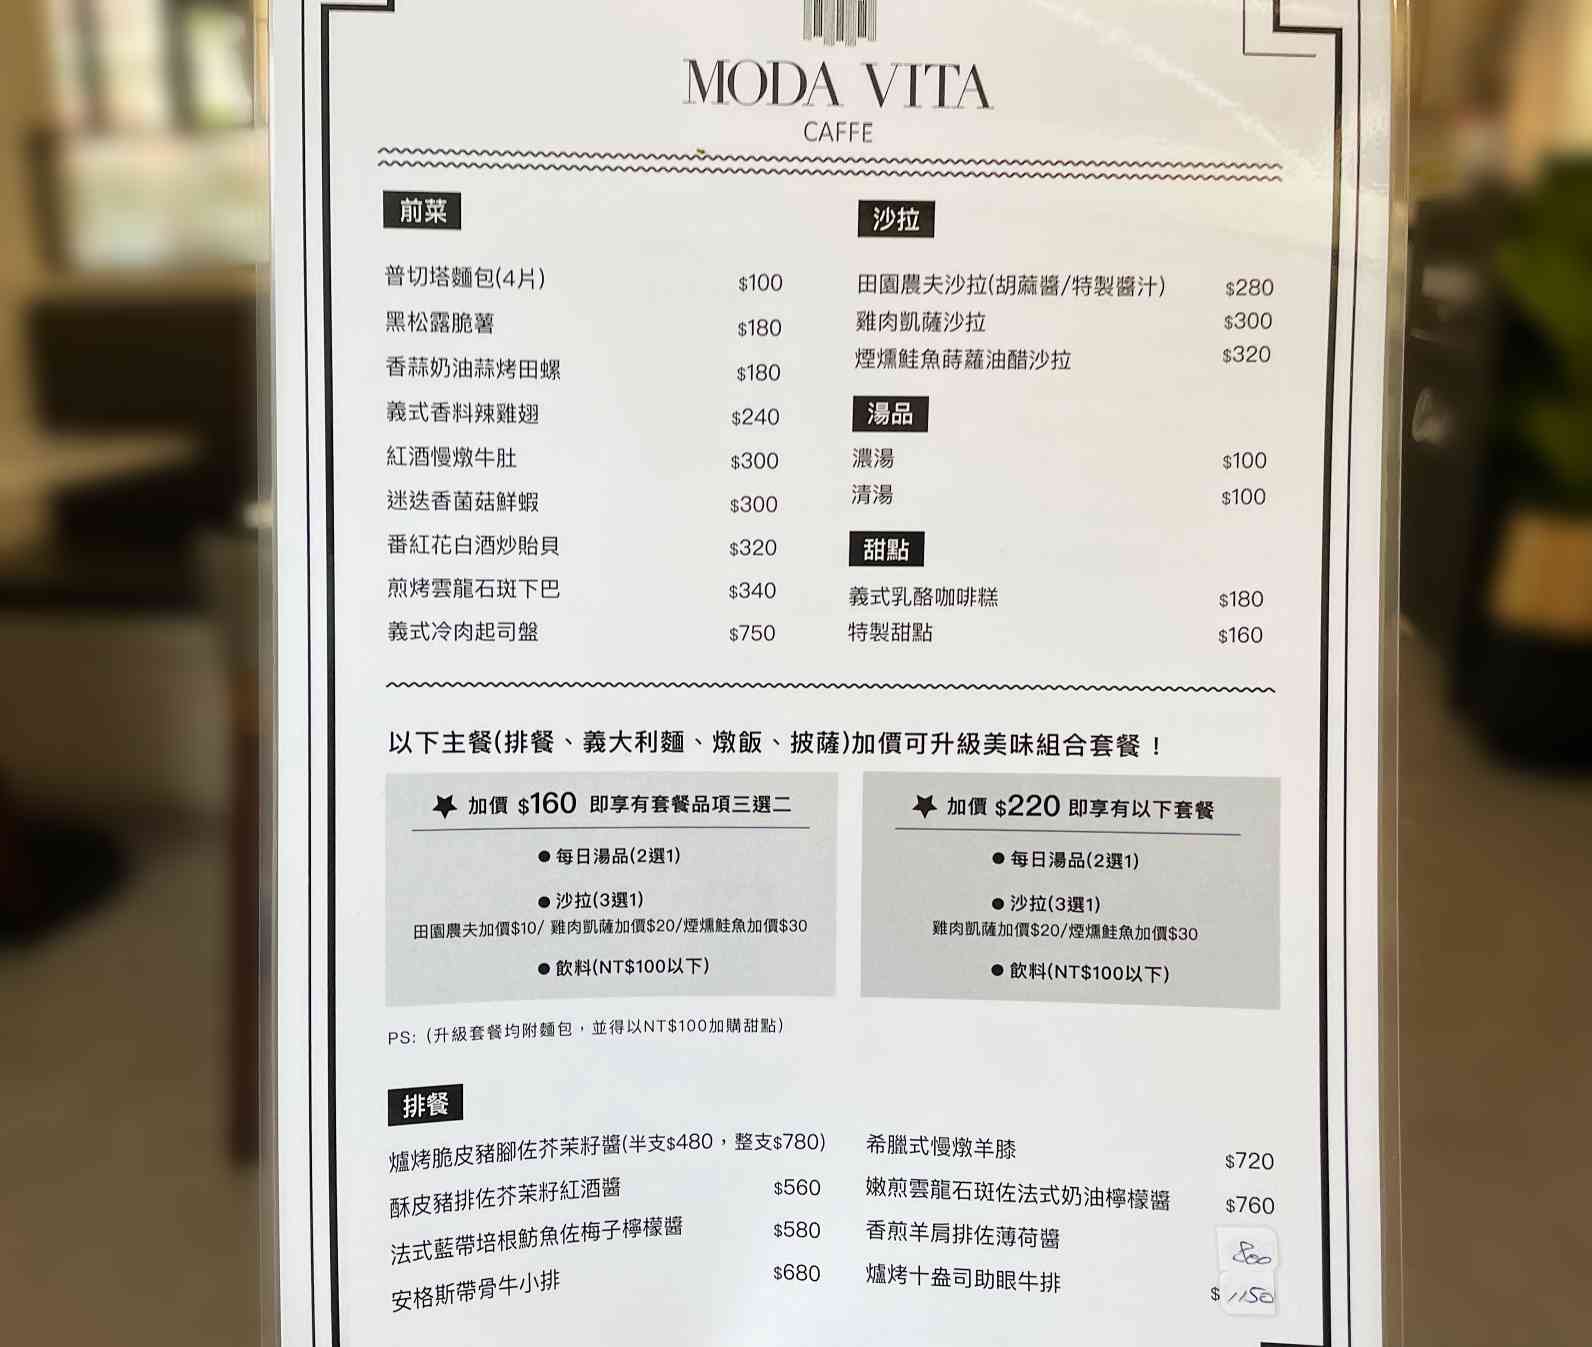 天母美食, Moda Vita Caffe, 義式料理, Moda Vita Caffe 義式料理,